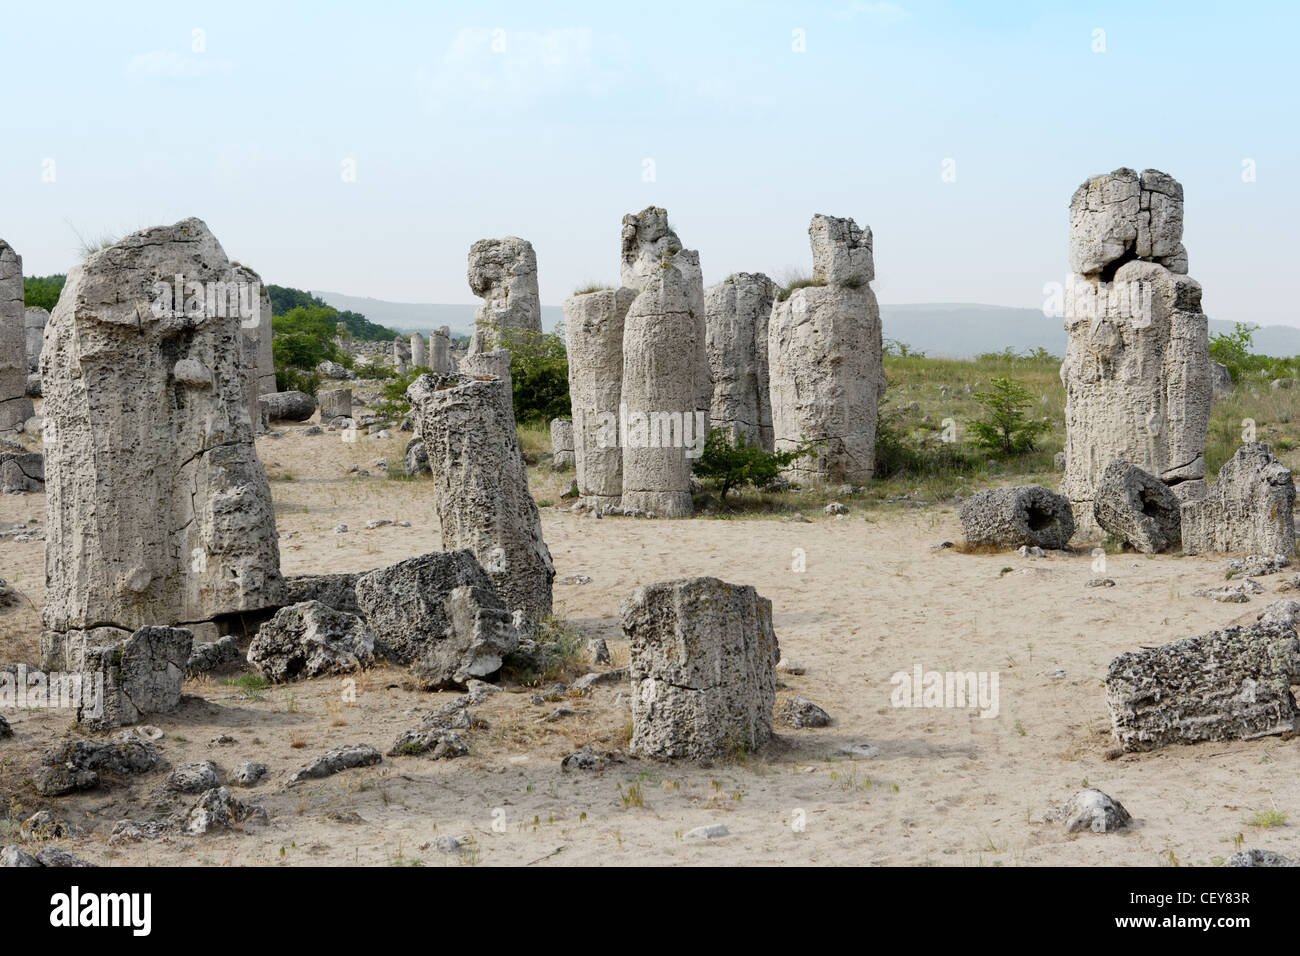 Stone phenomenon, Nailed rocks, near Varna, Bulgaria Stock Photo